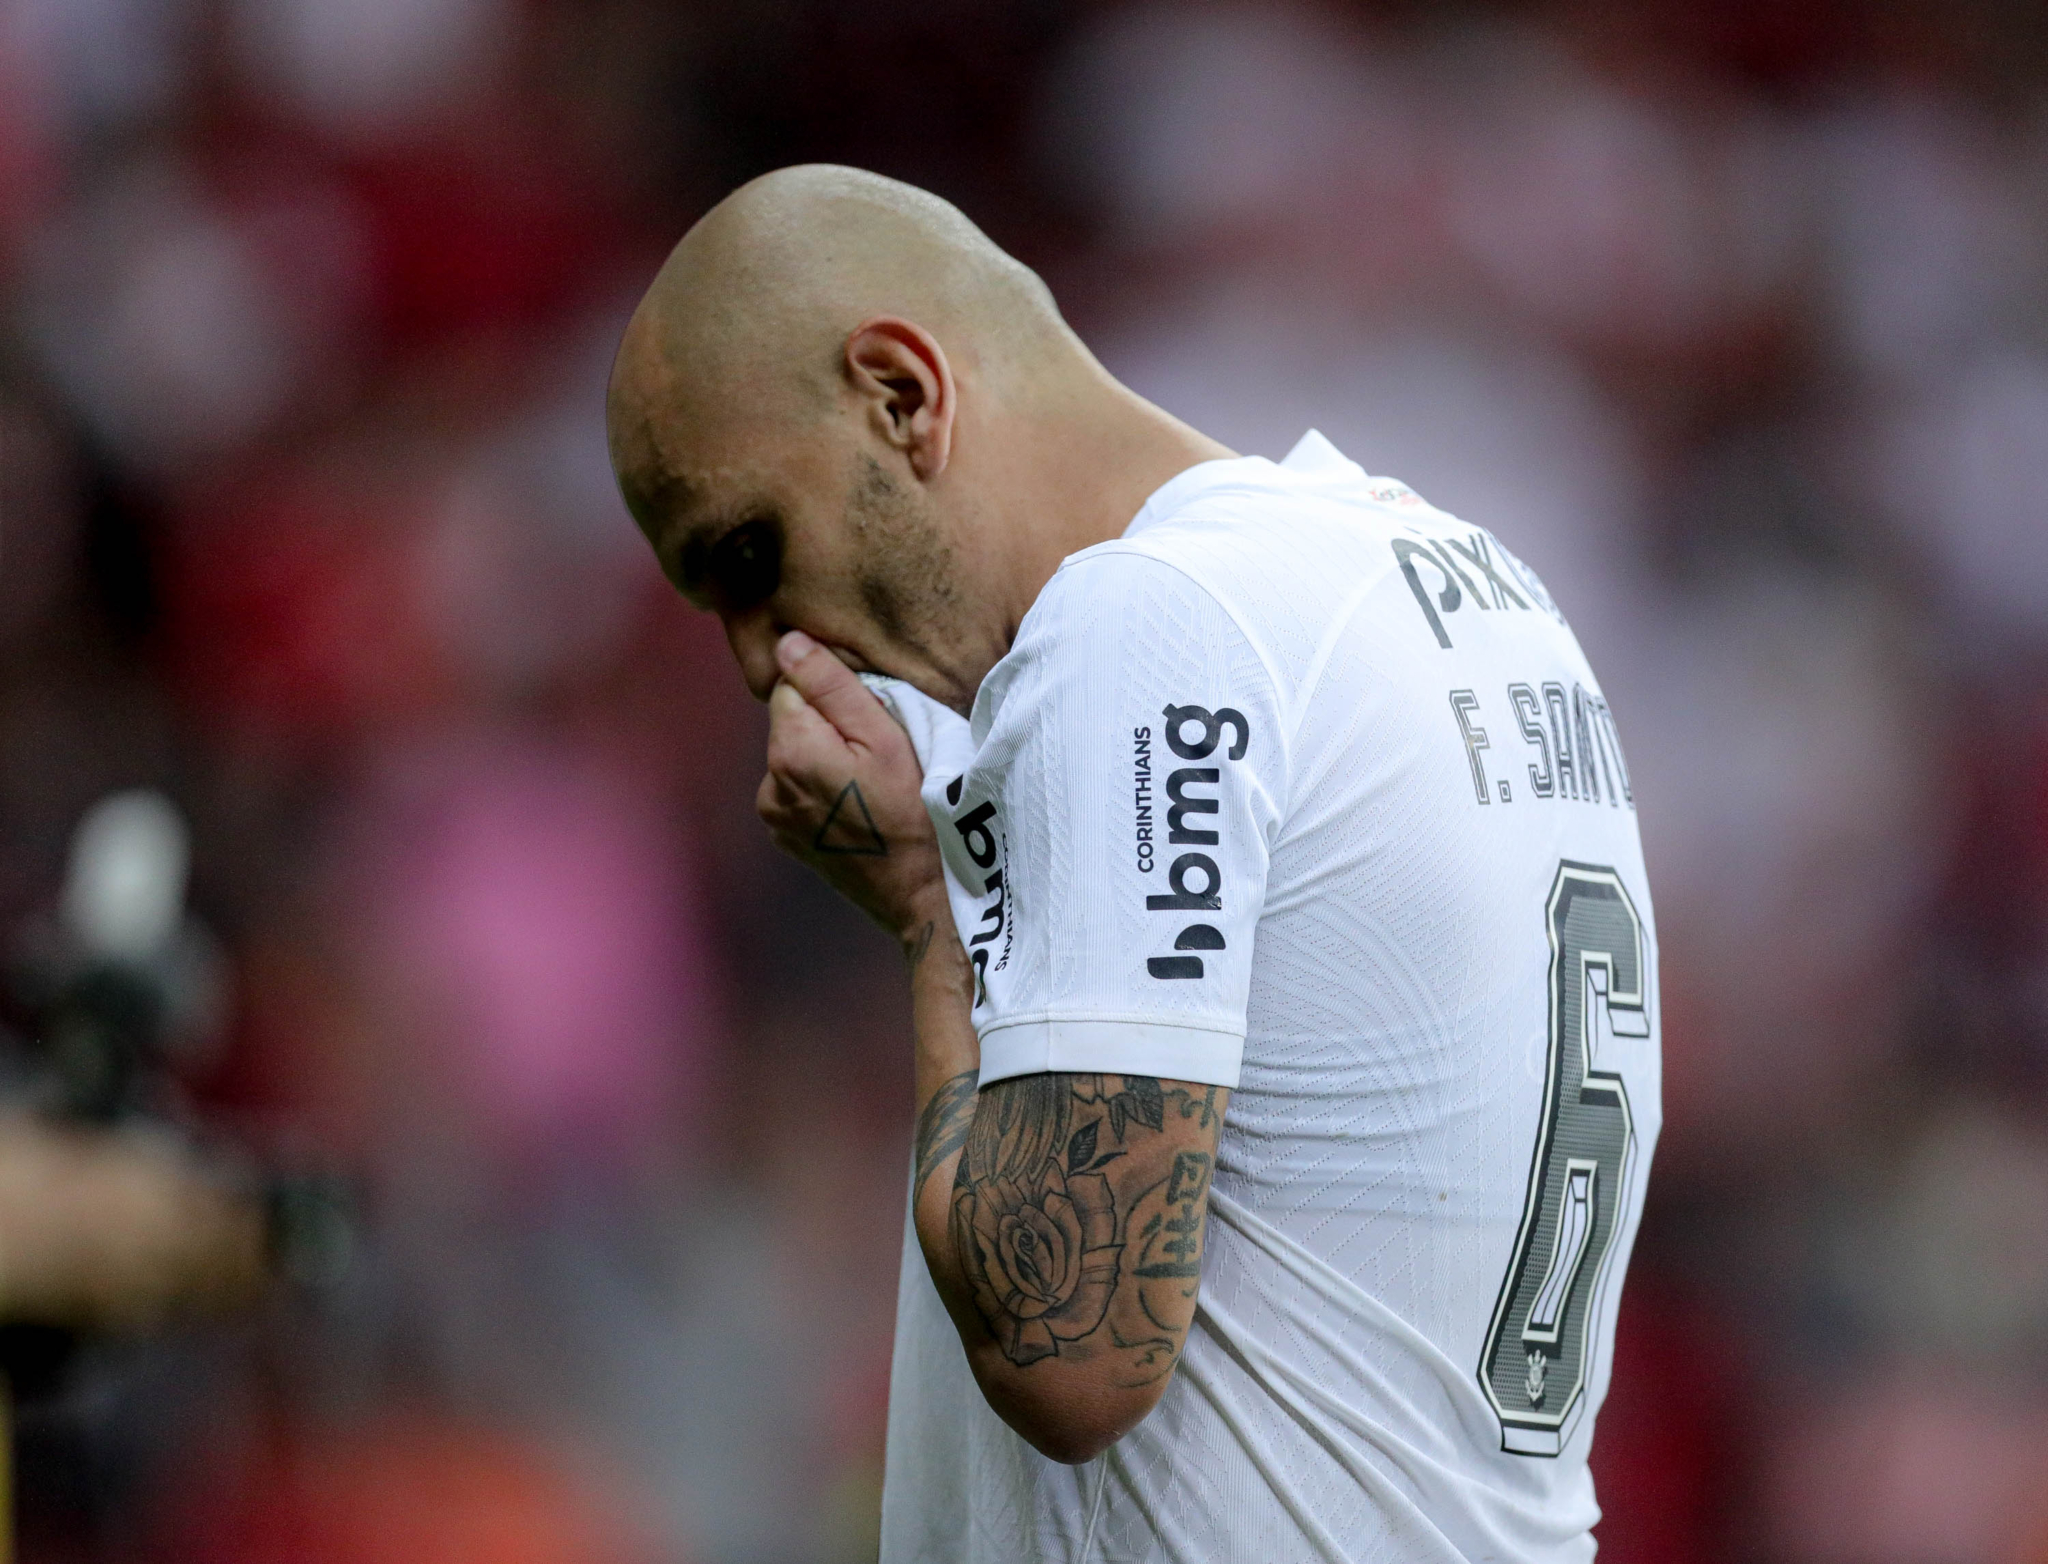 Como Corinthians venceu disputa com Flamengo e Santos por